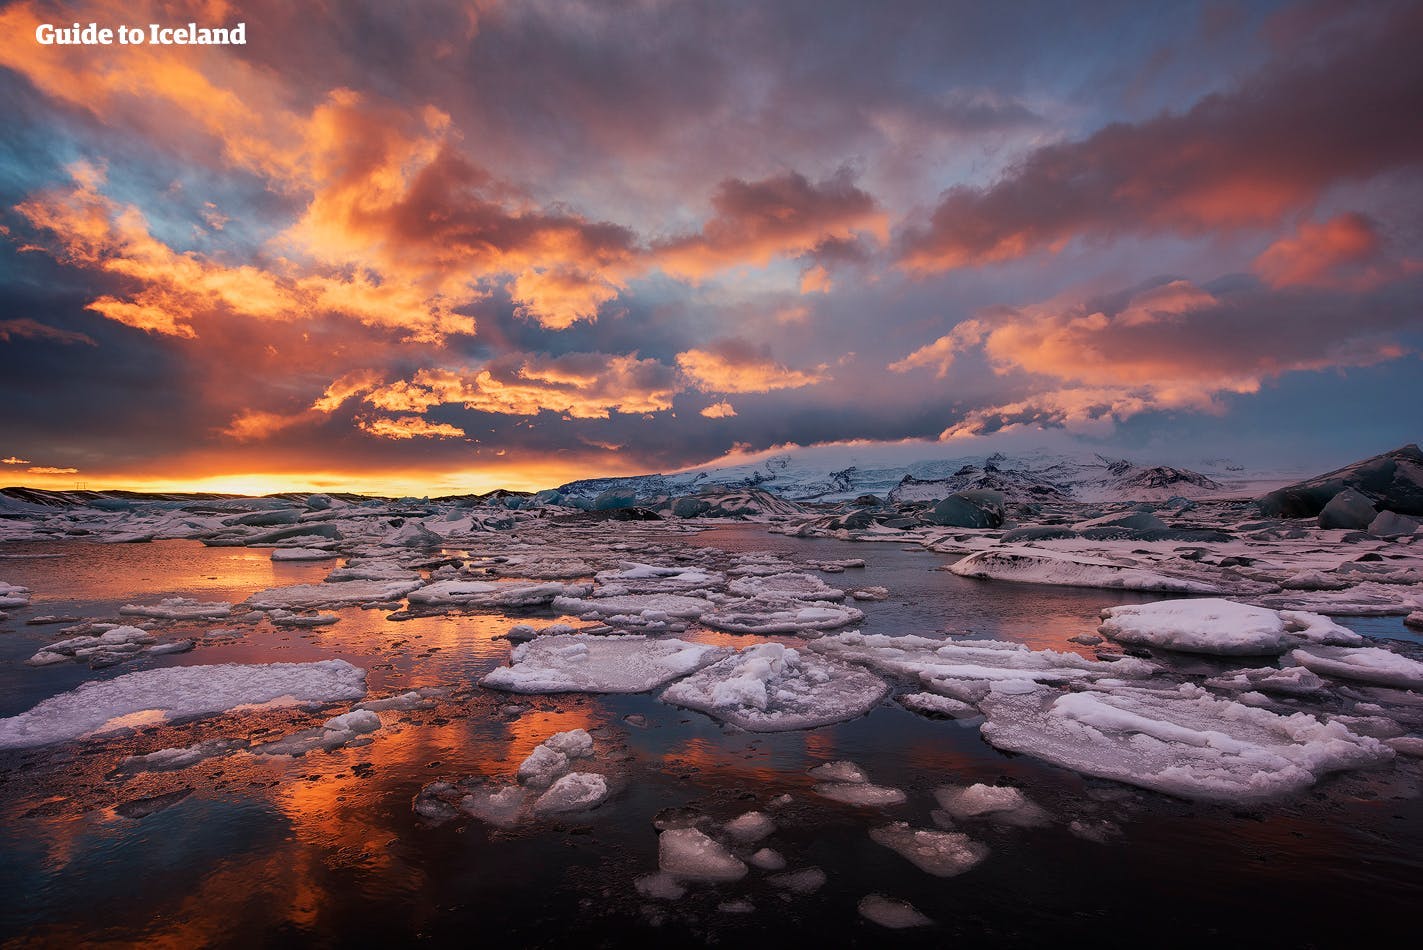 Die herrliche gefrorene Landschaft der Gletscherlagune Jökulsarlon in Südisland.